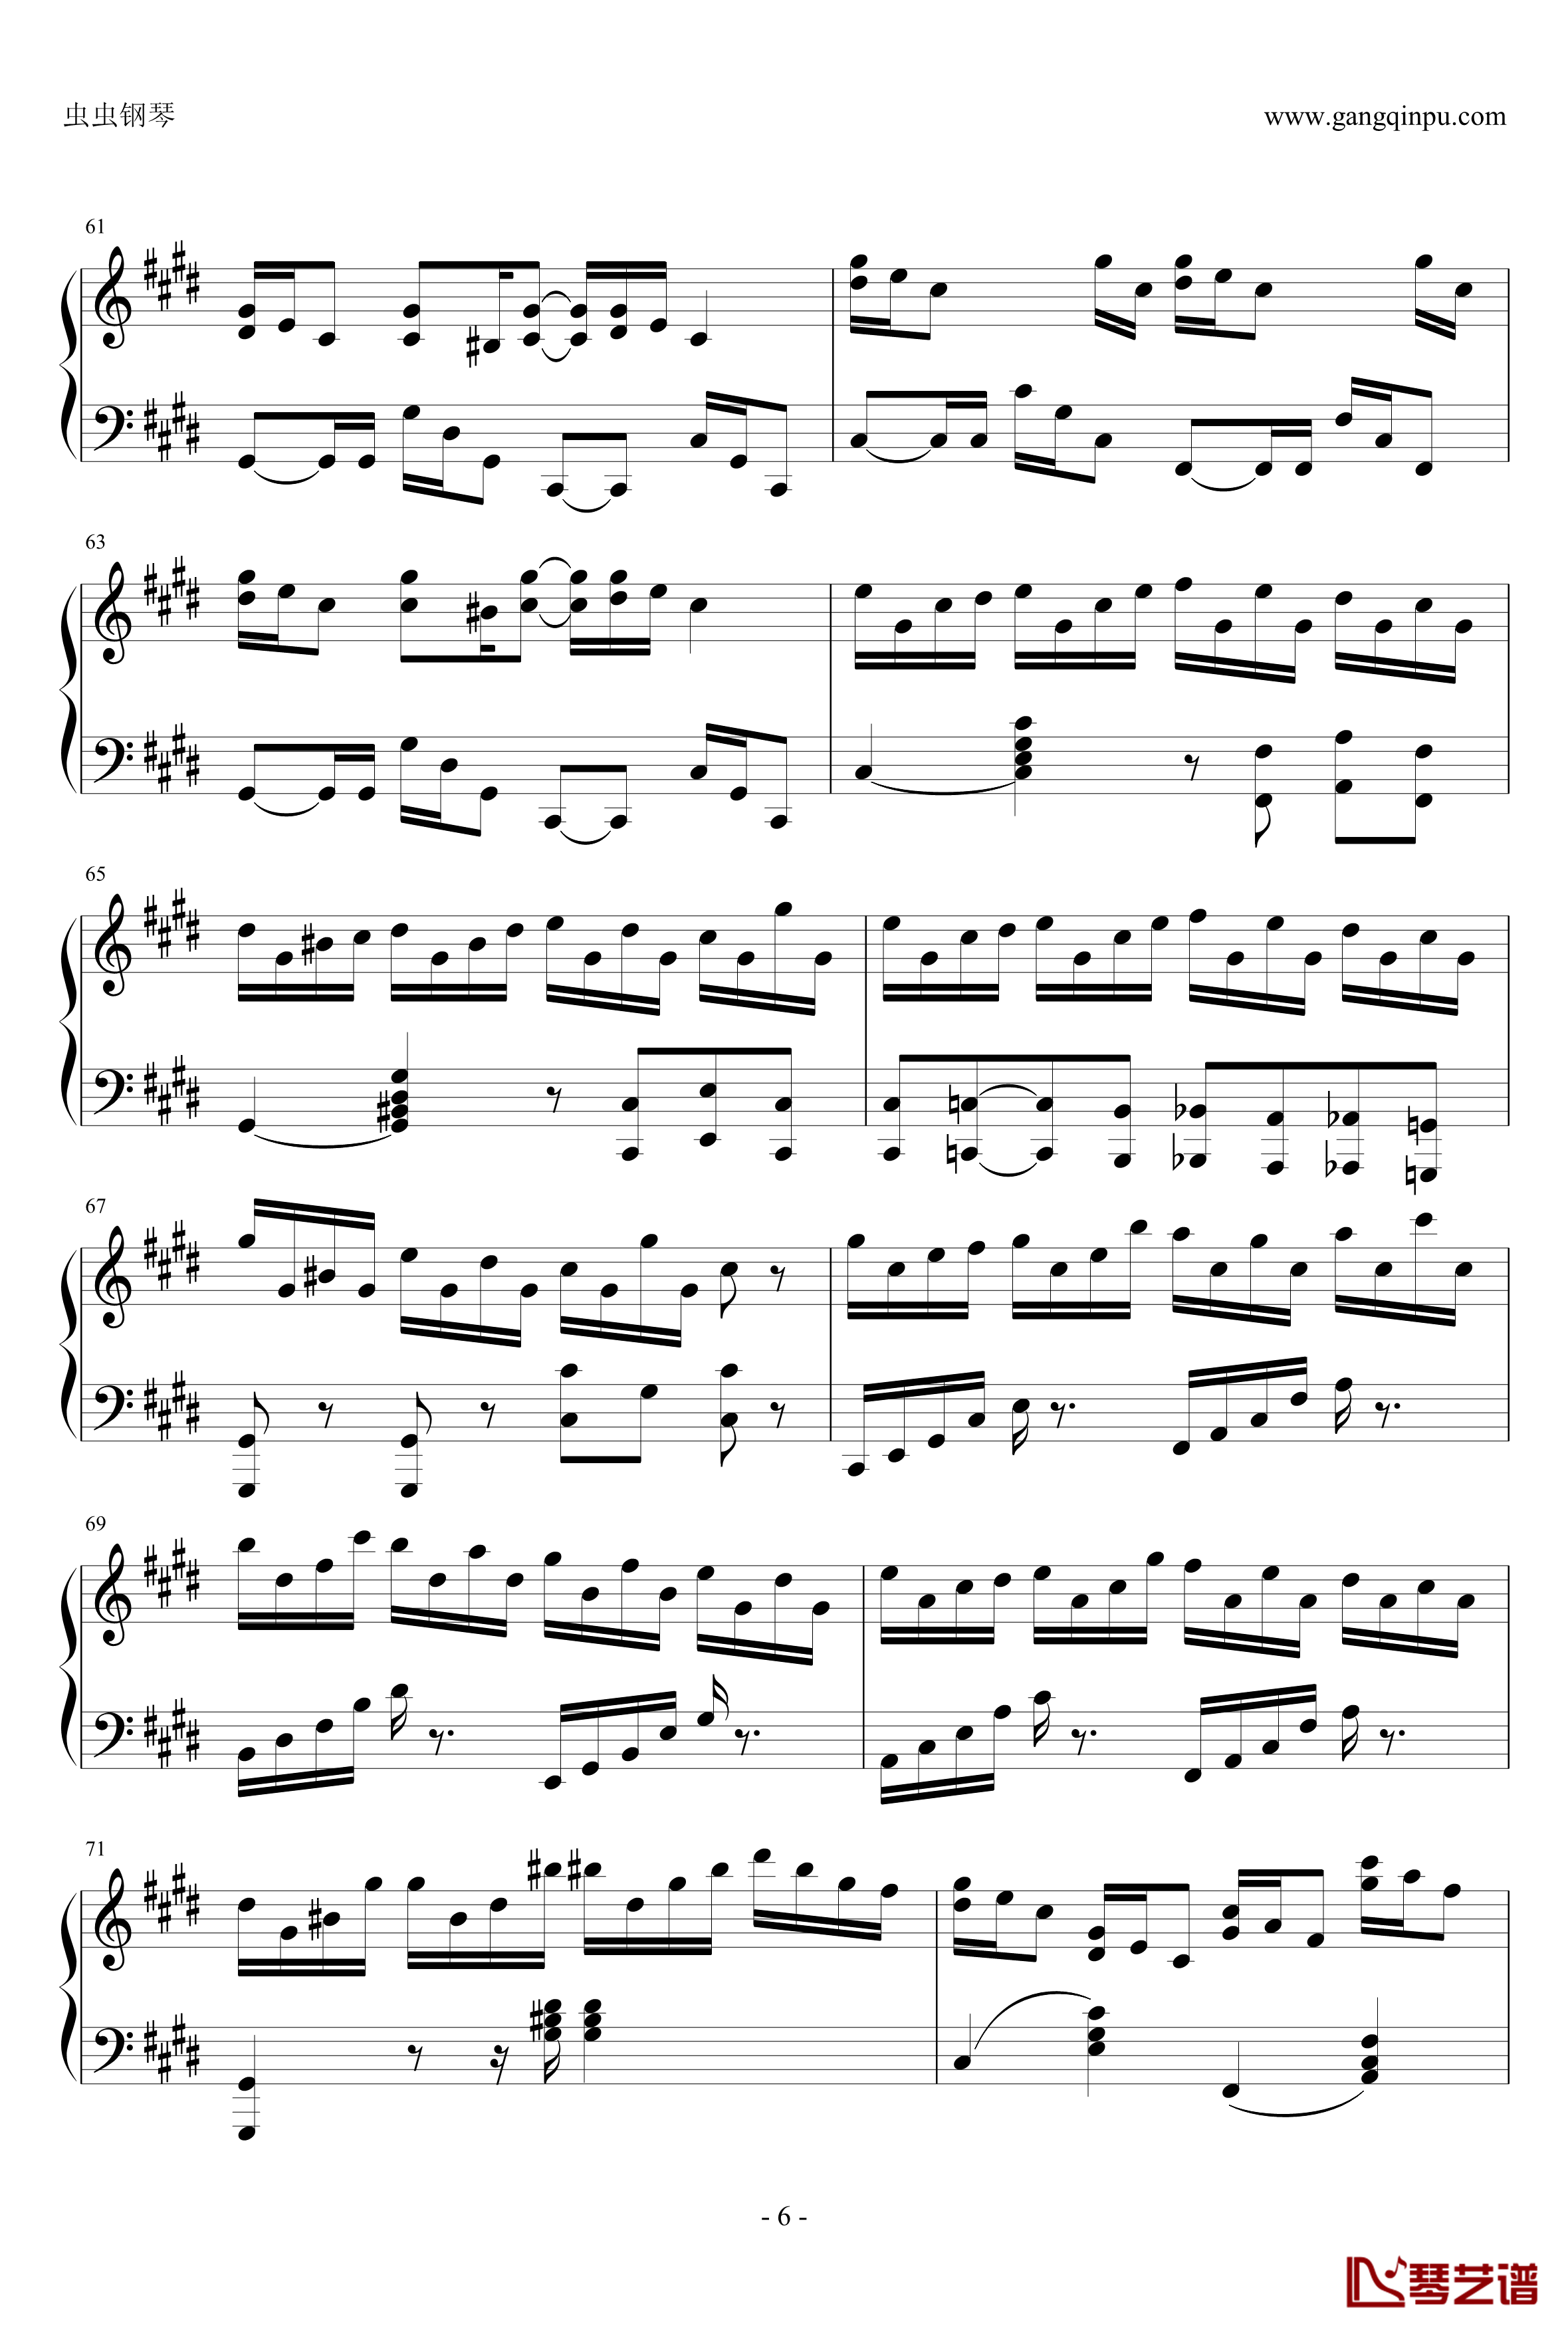 克罗地亚狂想曲钢琴谱-这个才是原版-马克西姆-Maksim·Mrvica6